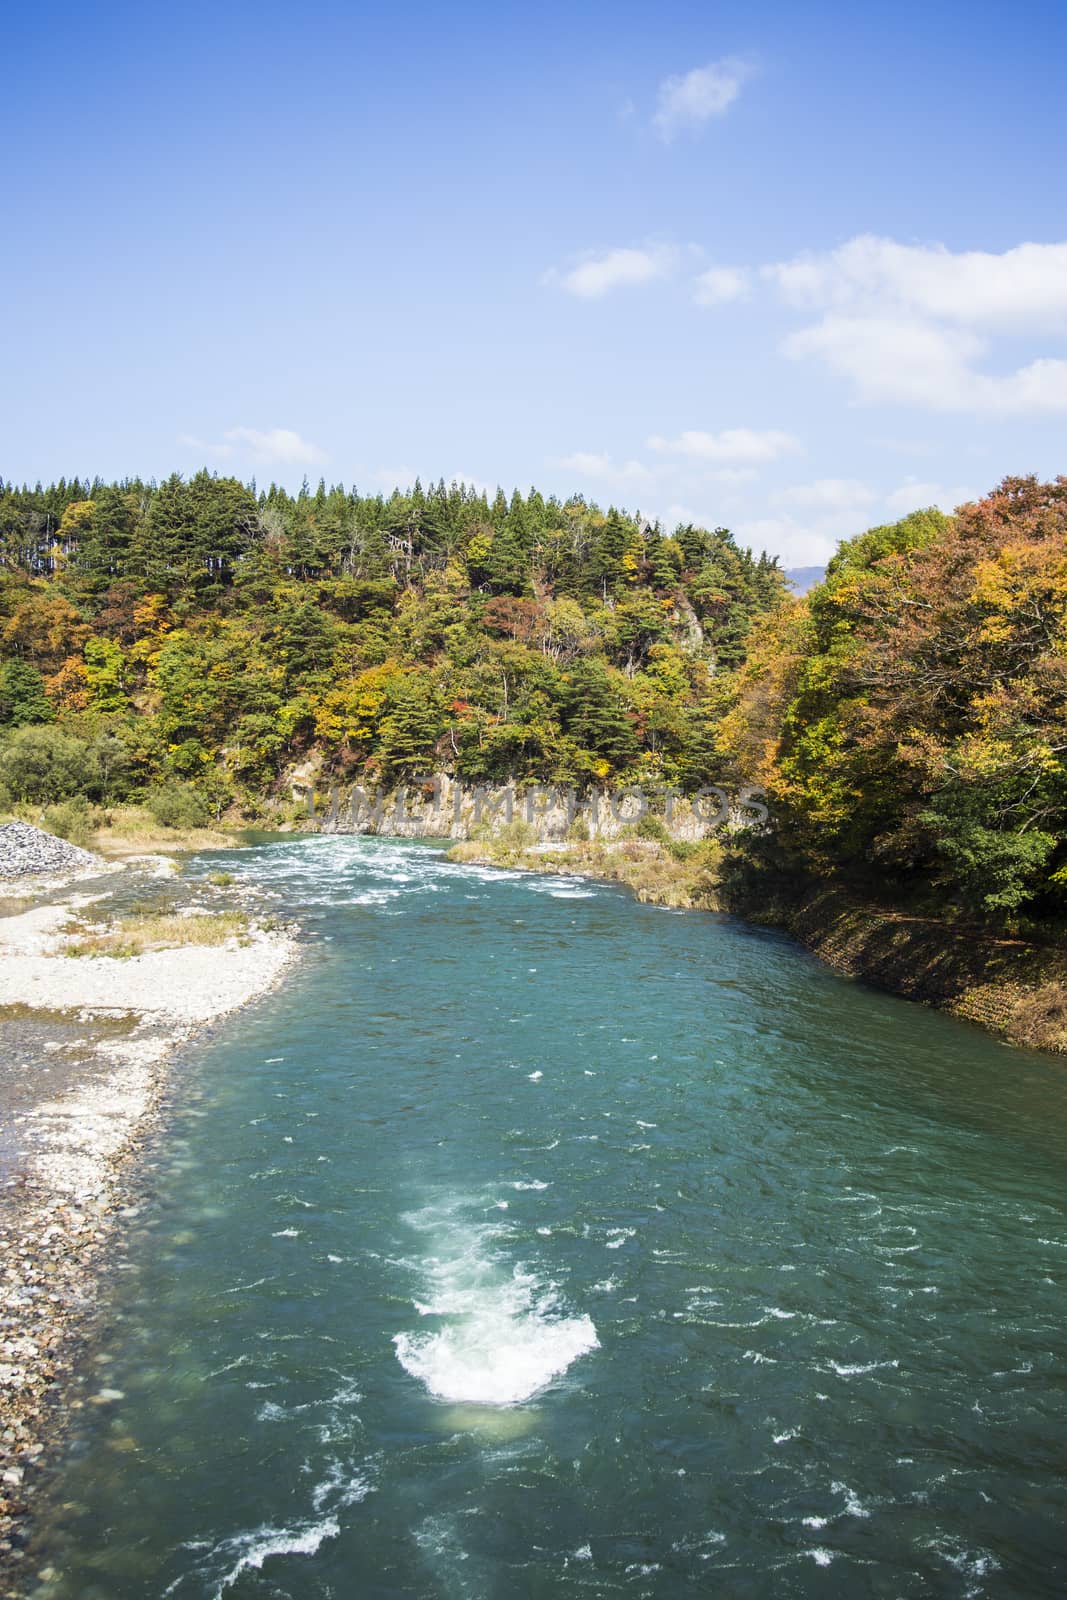 River front of shirakawa-go Japan